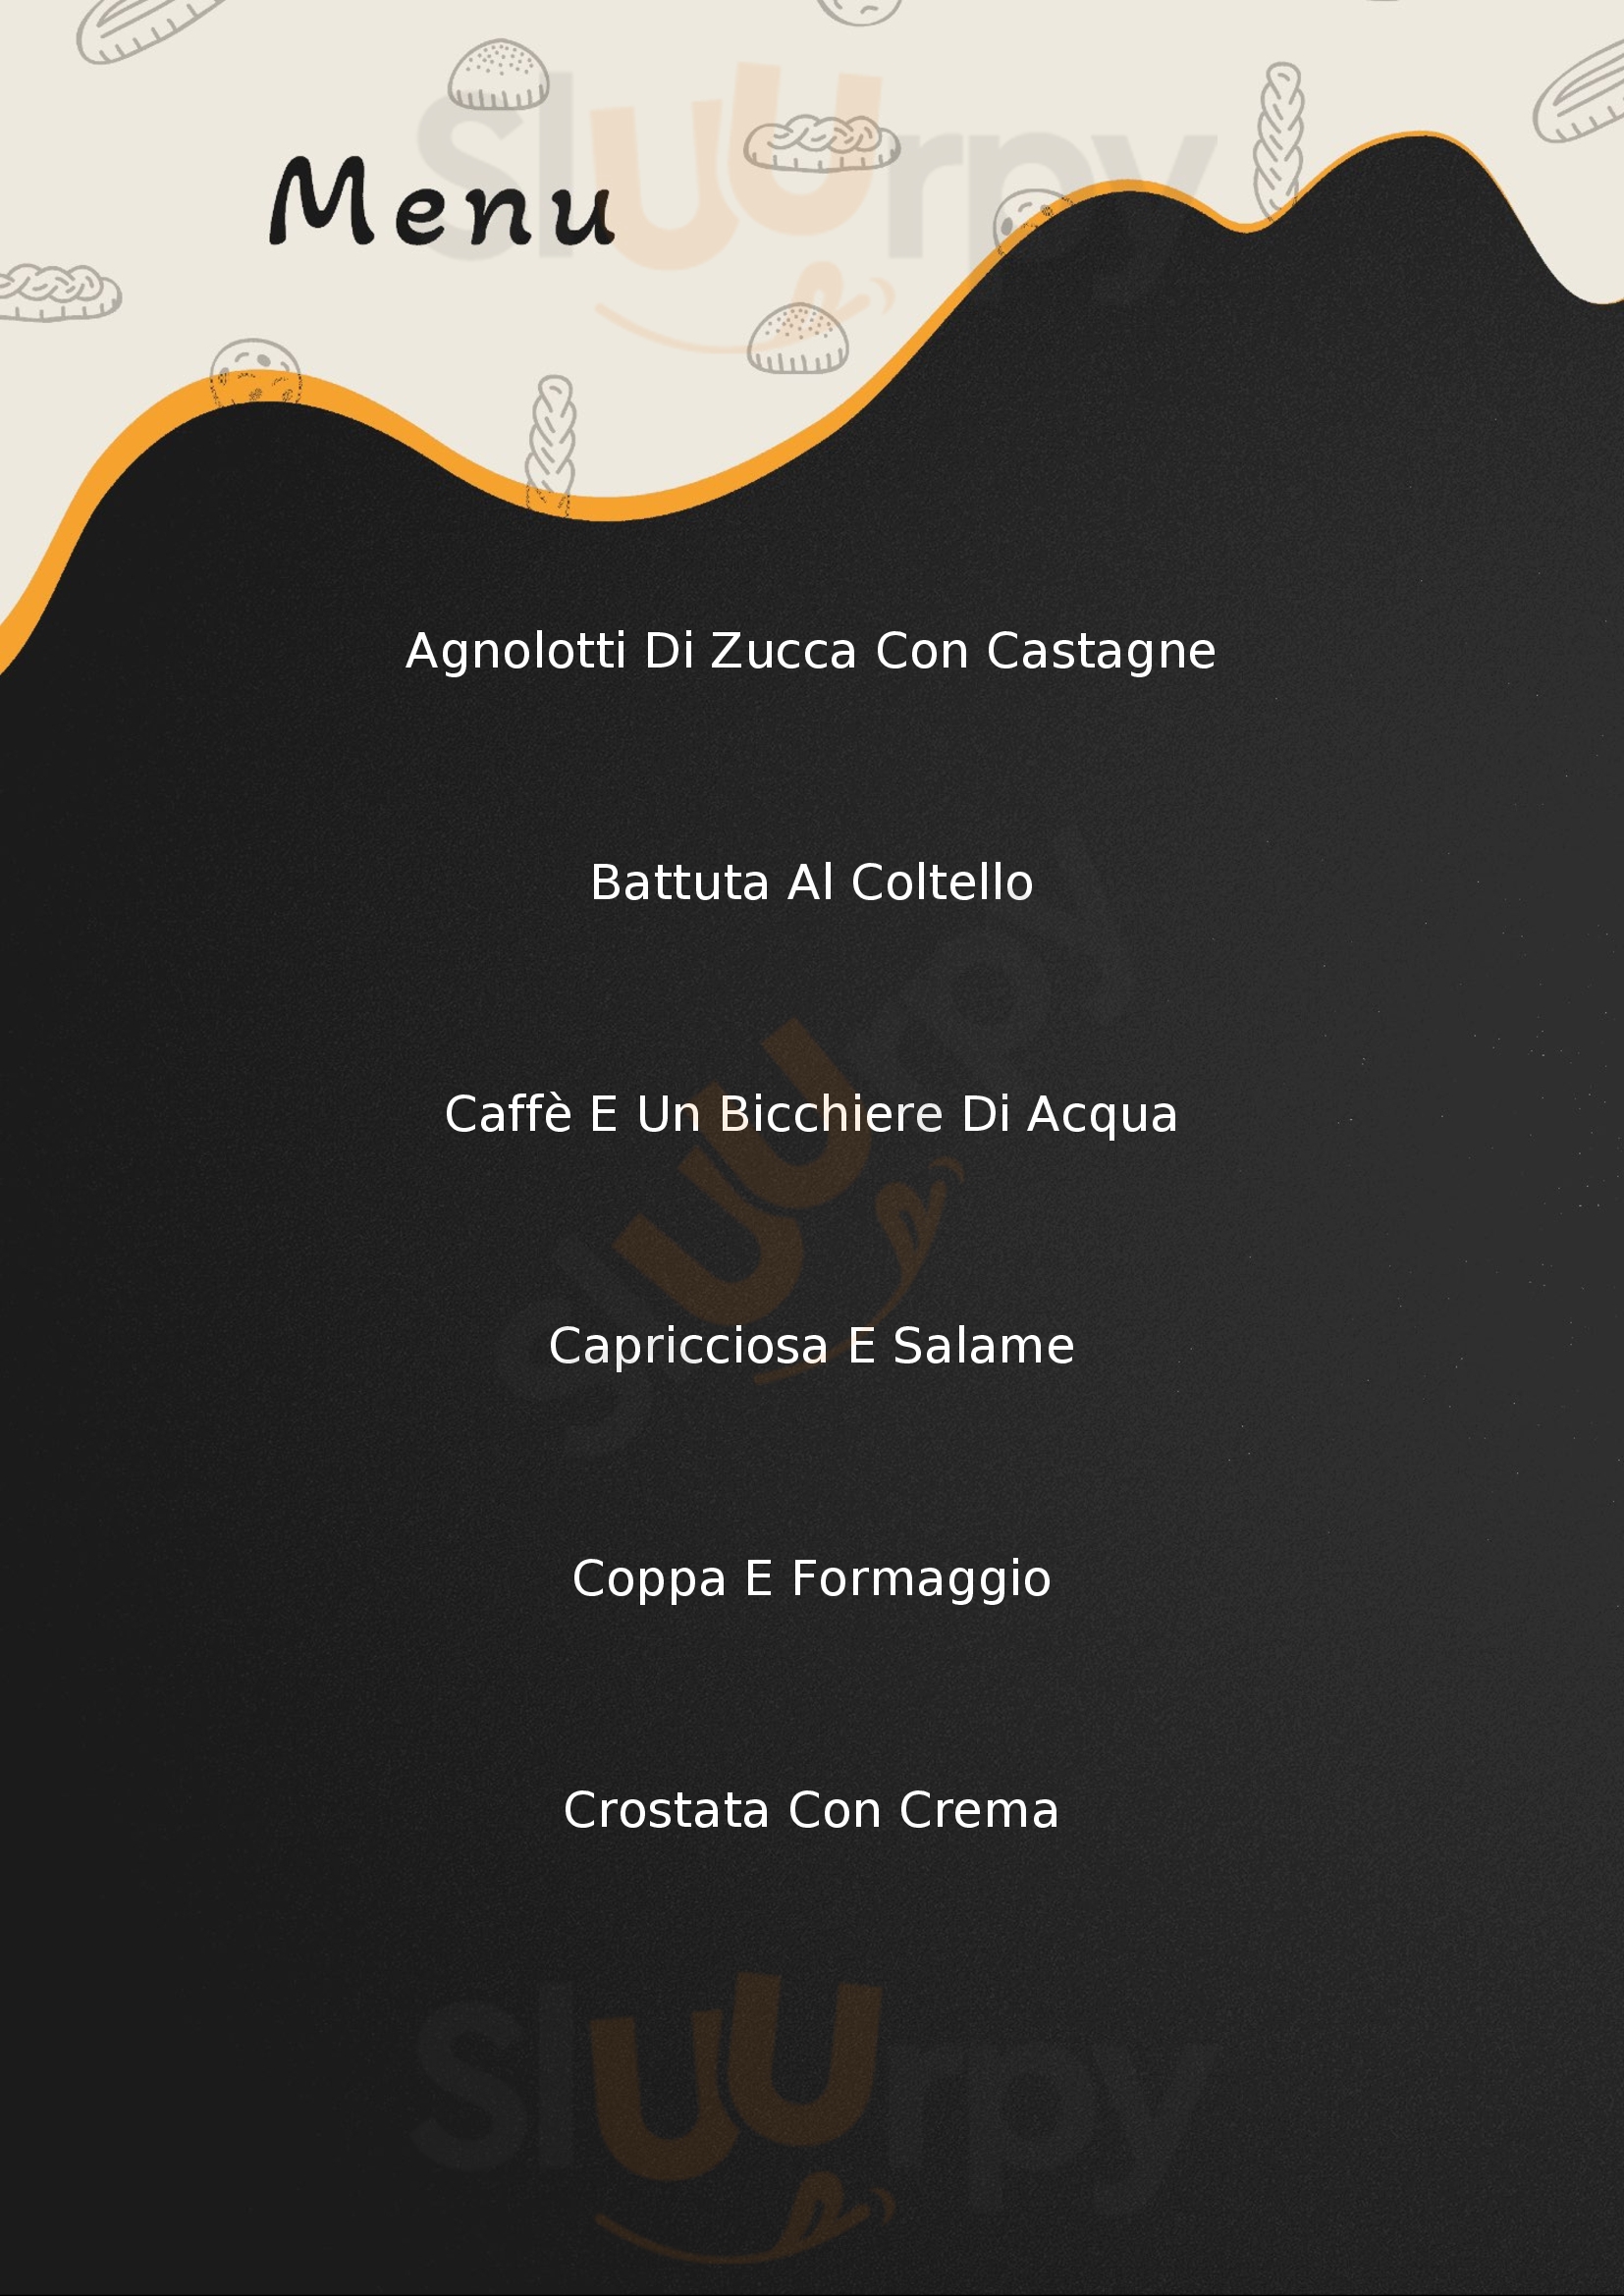 San Sebastian Cafe Cuneo menù 1 pagina